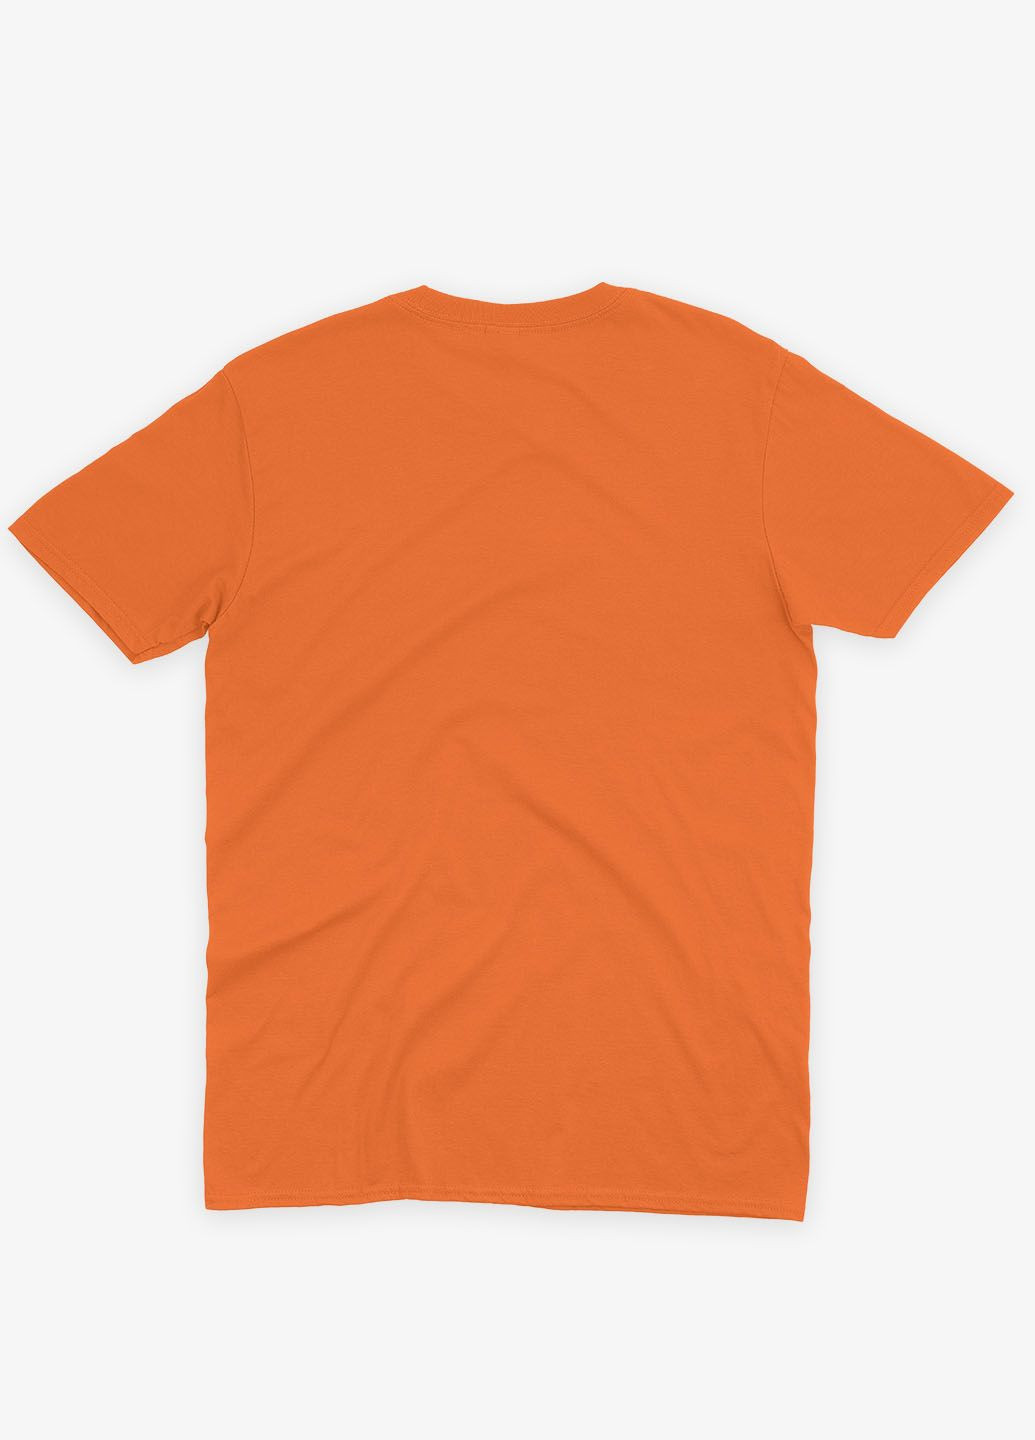 Оранжевая демисезонная футболка для мальчика с принтом супервора - джокер (ts001-1-ora-006-005-007-b) Modno